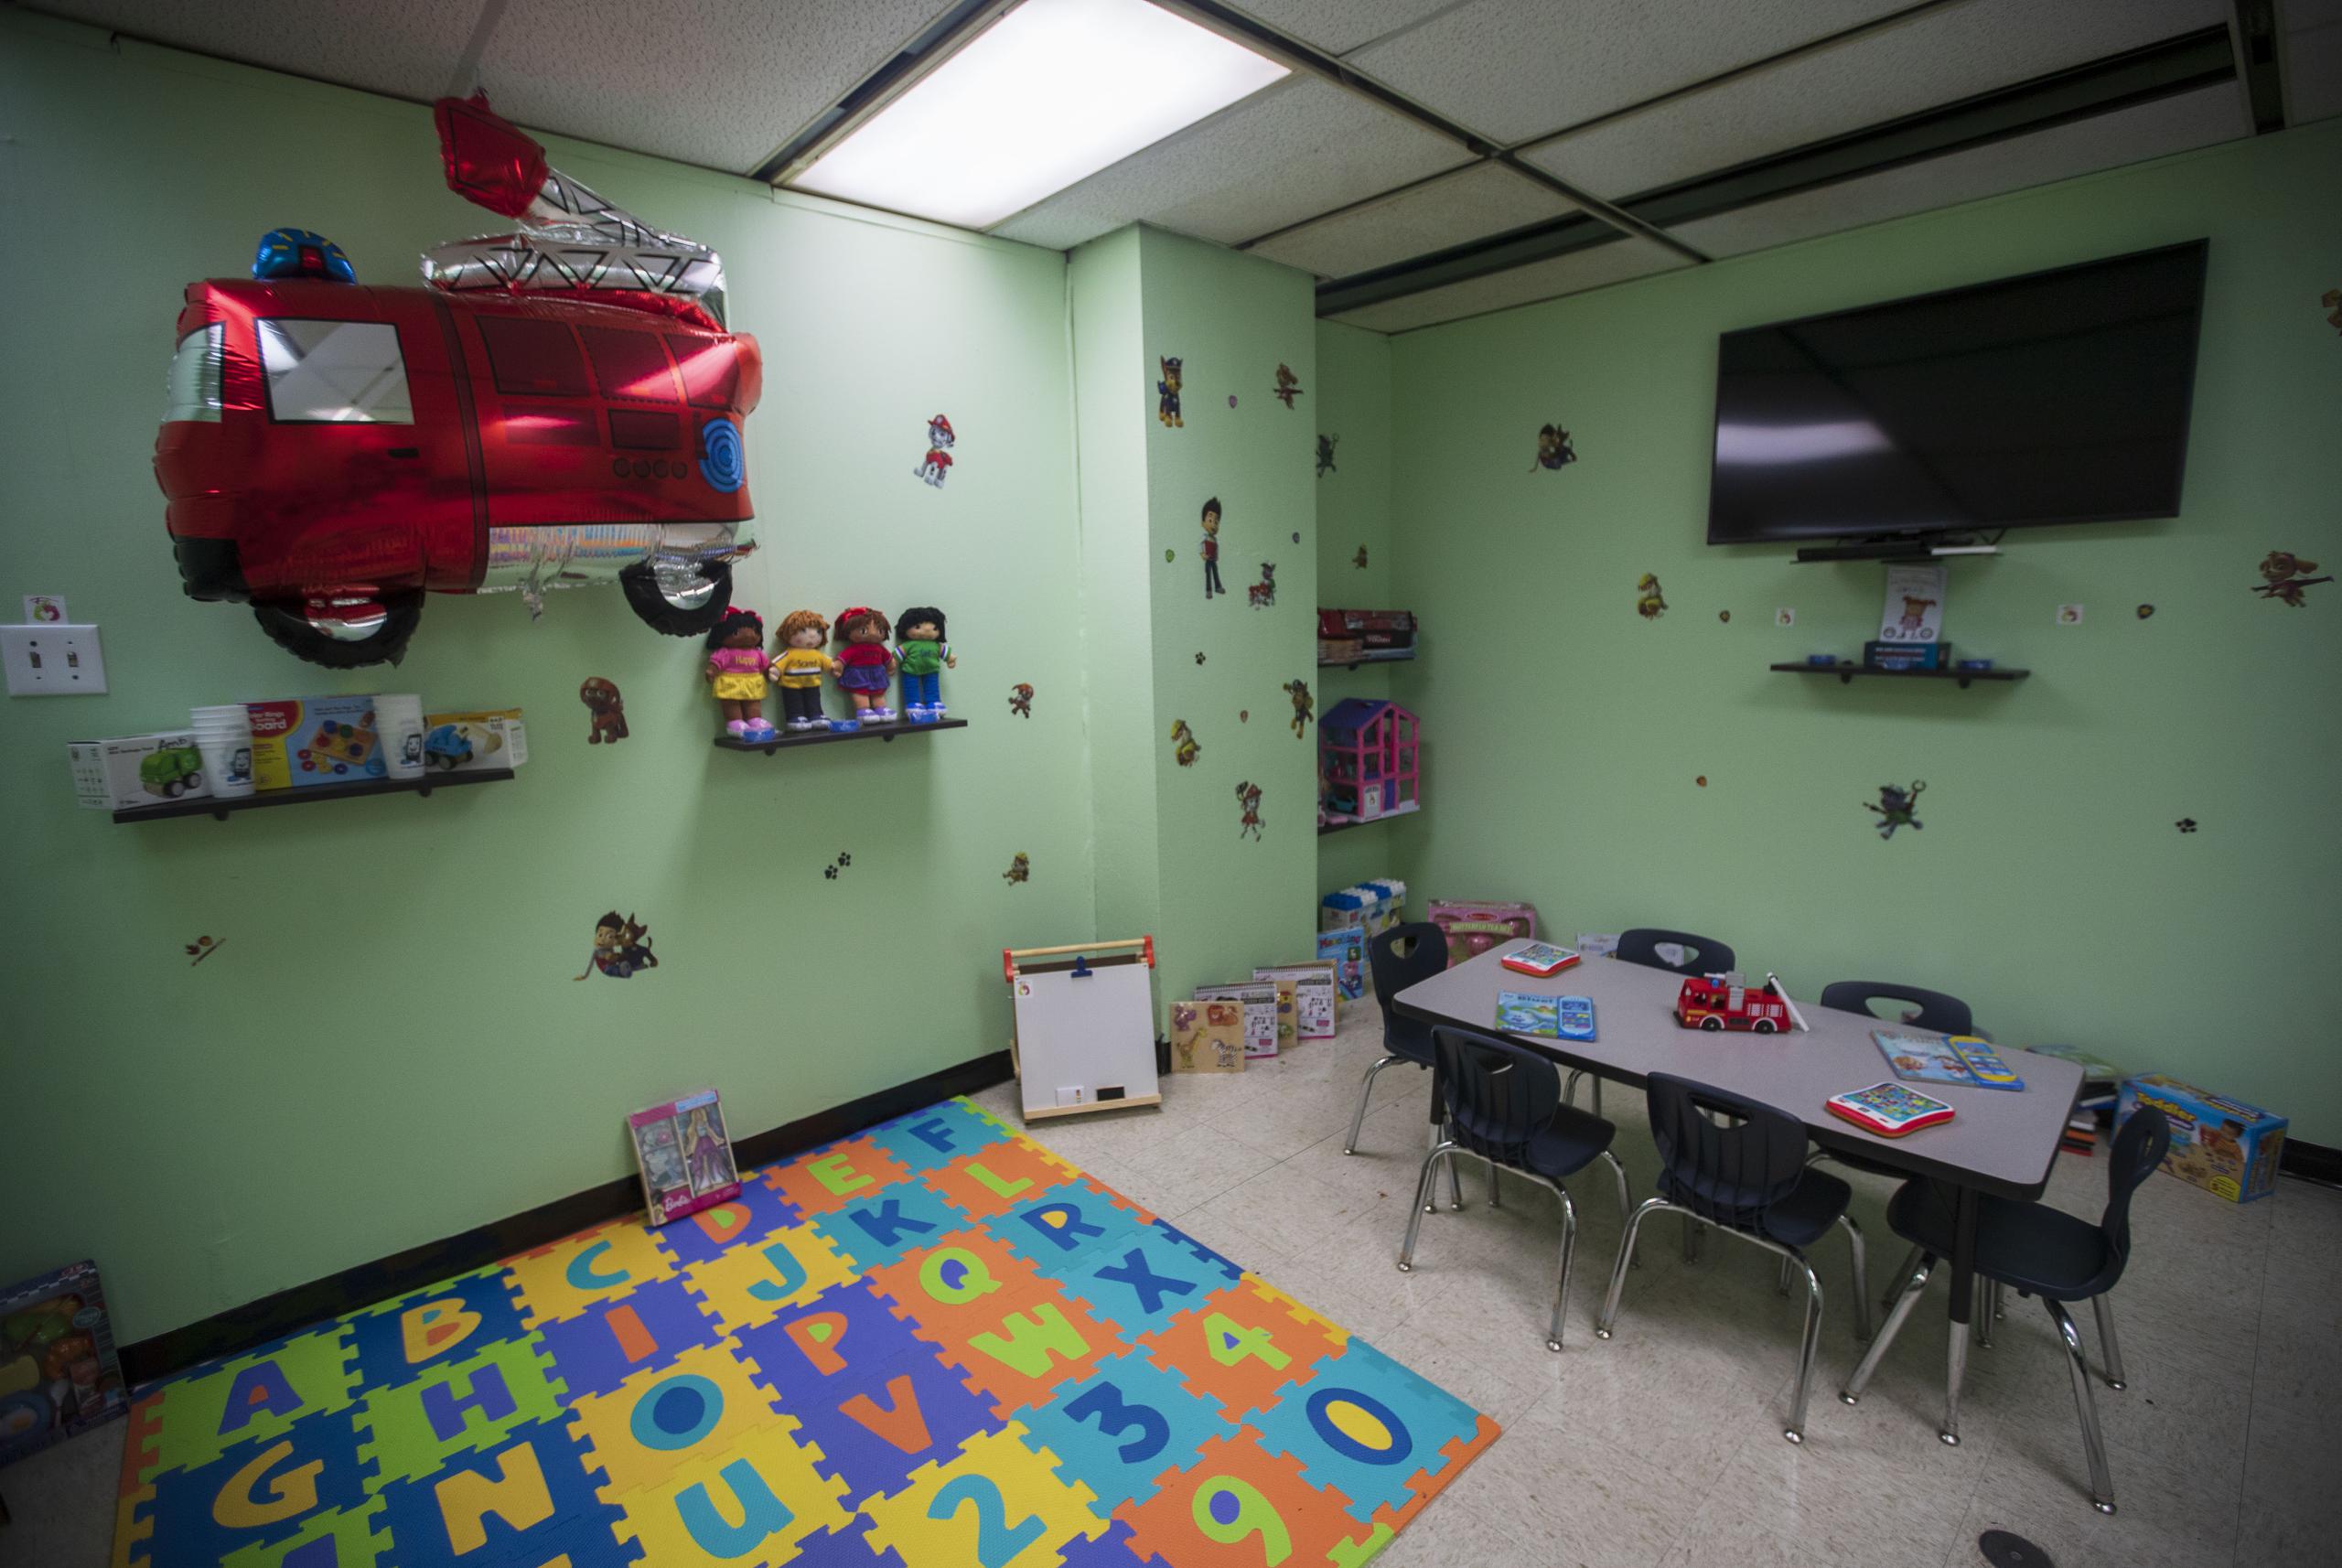 La sala ahora cuenta con juguetes, libros, películas infantiles, un televisor, un sofá para que los menores descansen y decoraciones de caricaturas en las paredes.